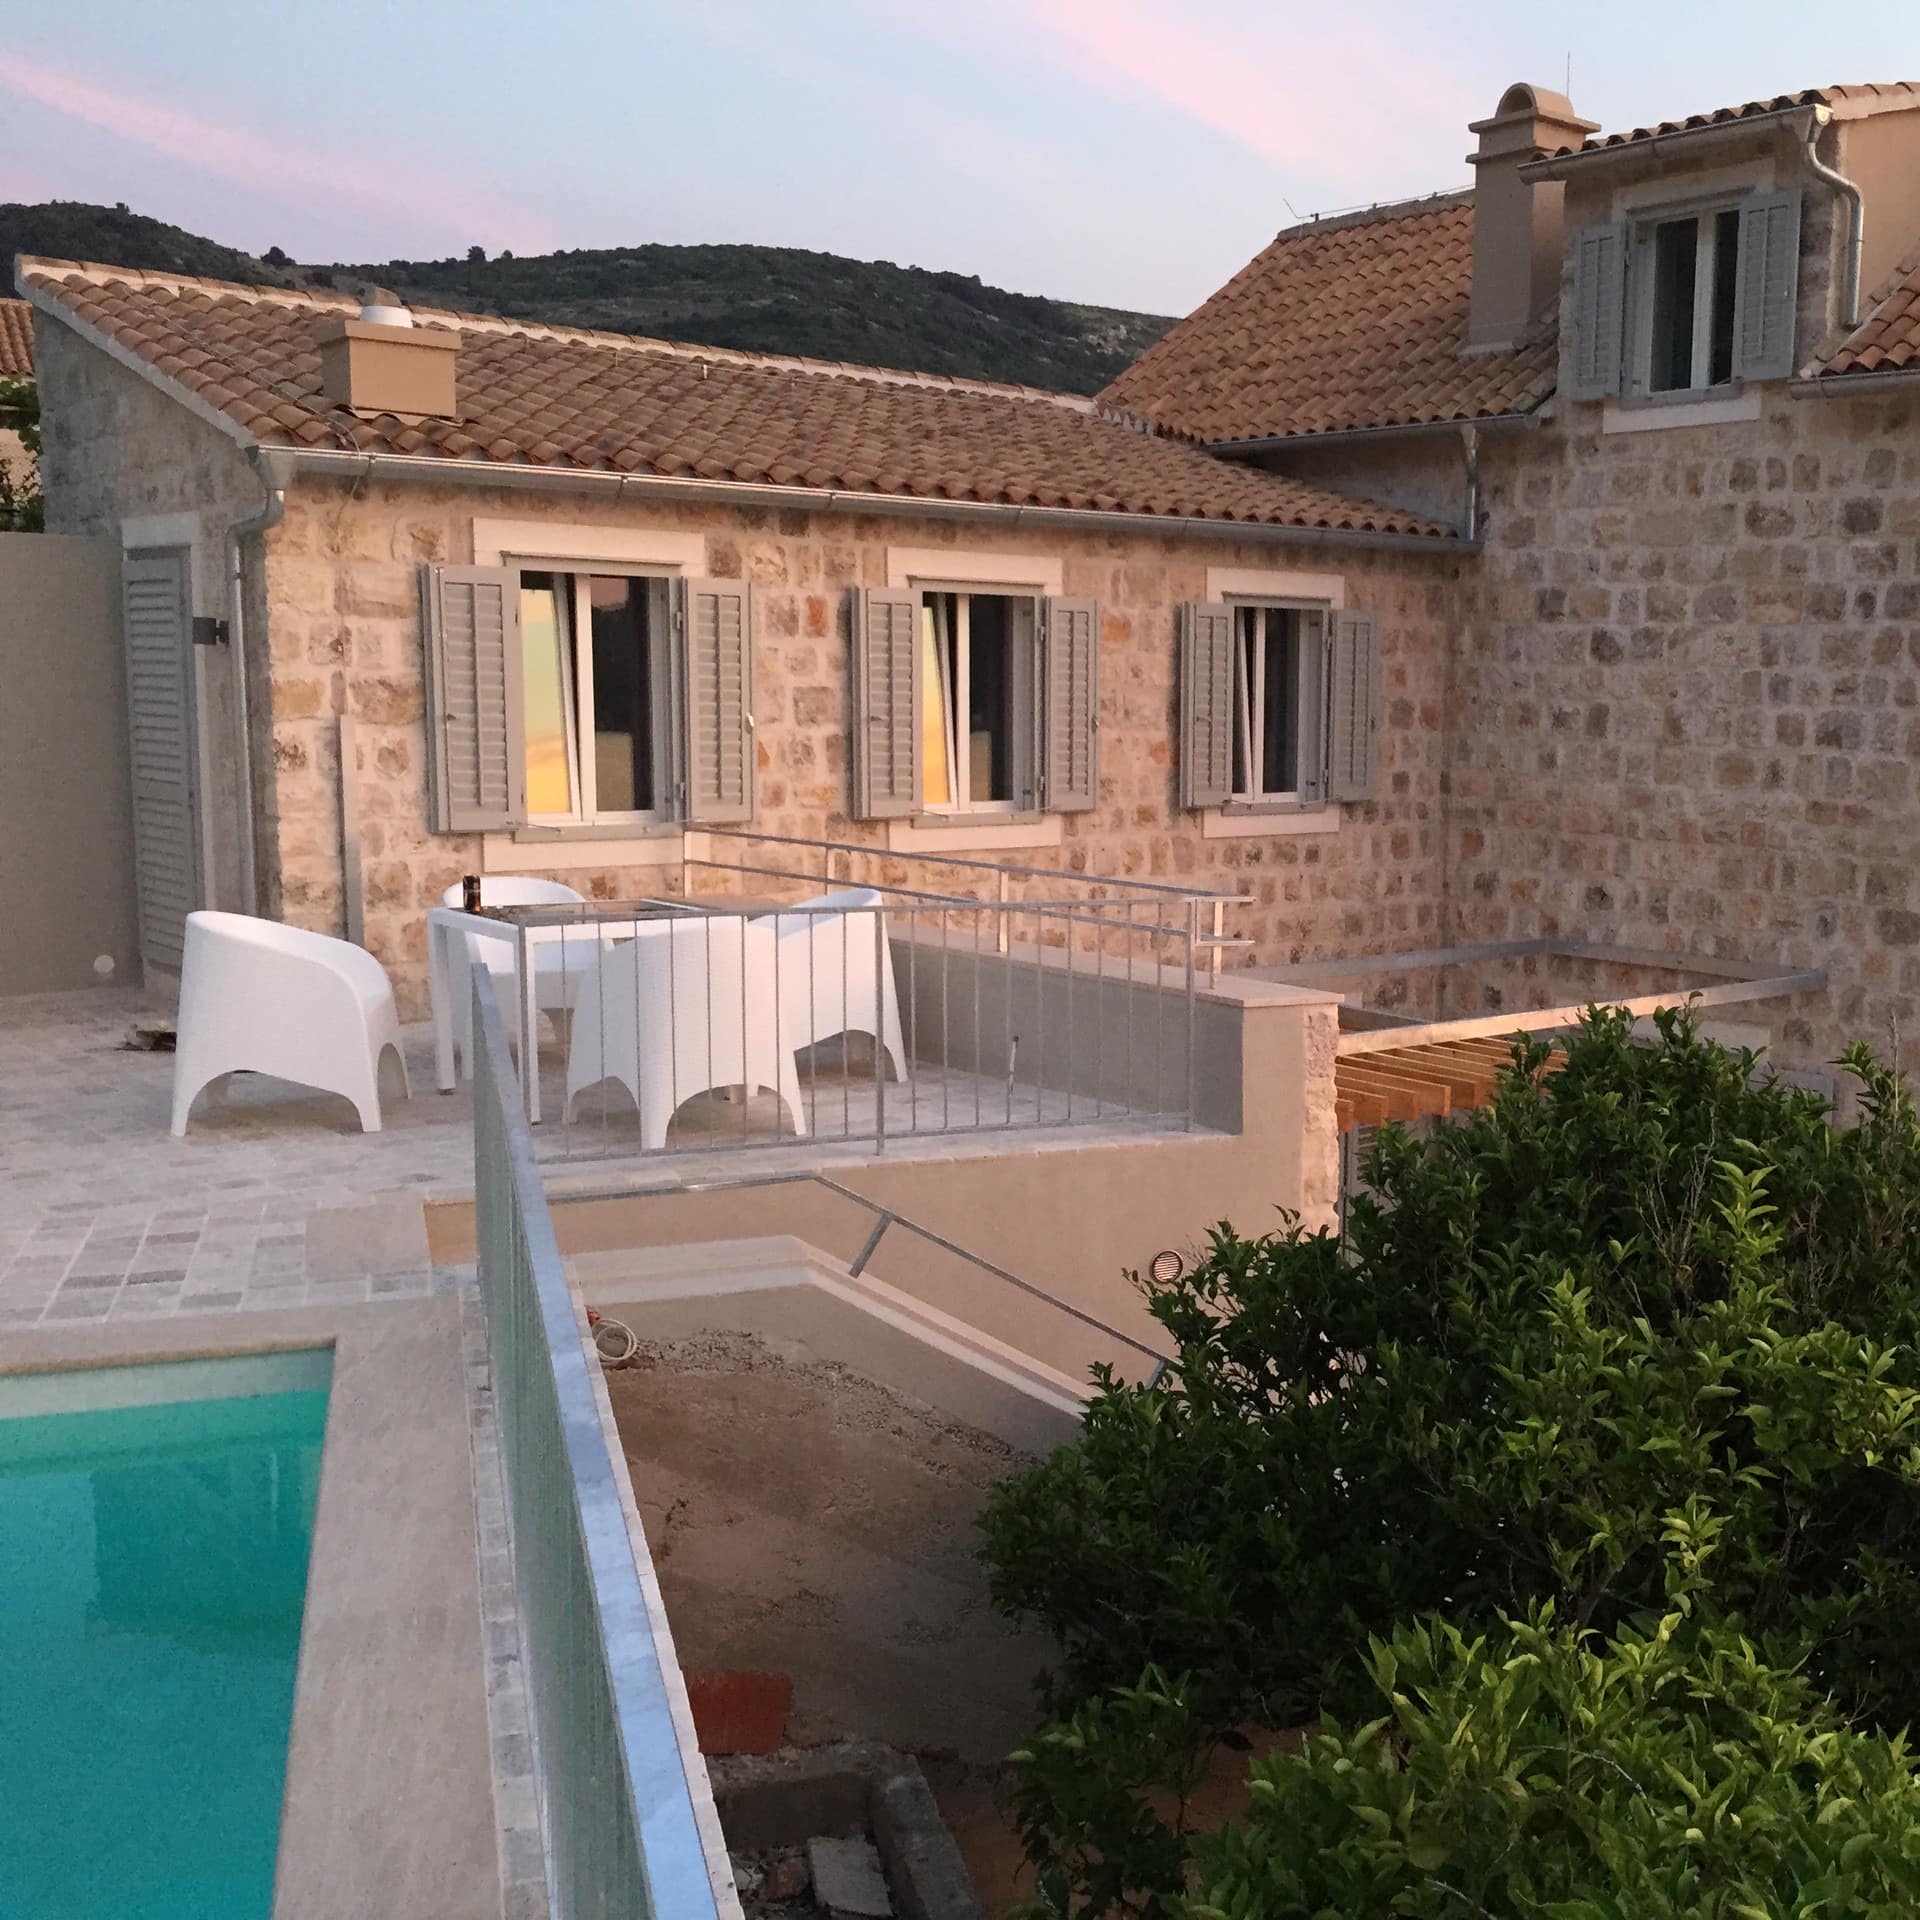 Ein Ferienhaus aus Stein mit Terrasse und Pool in Kroatien direkt am Meer. 